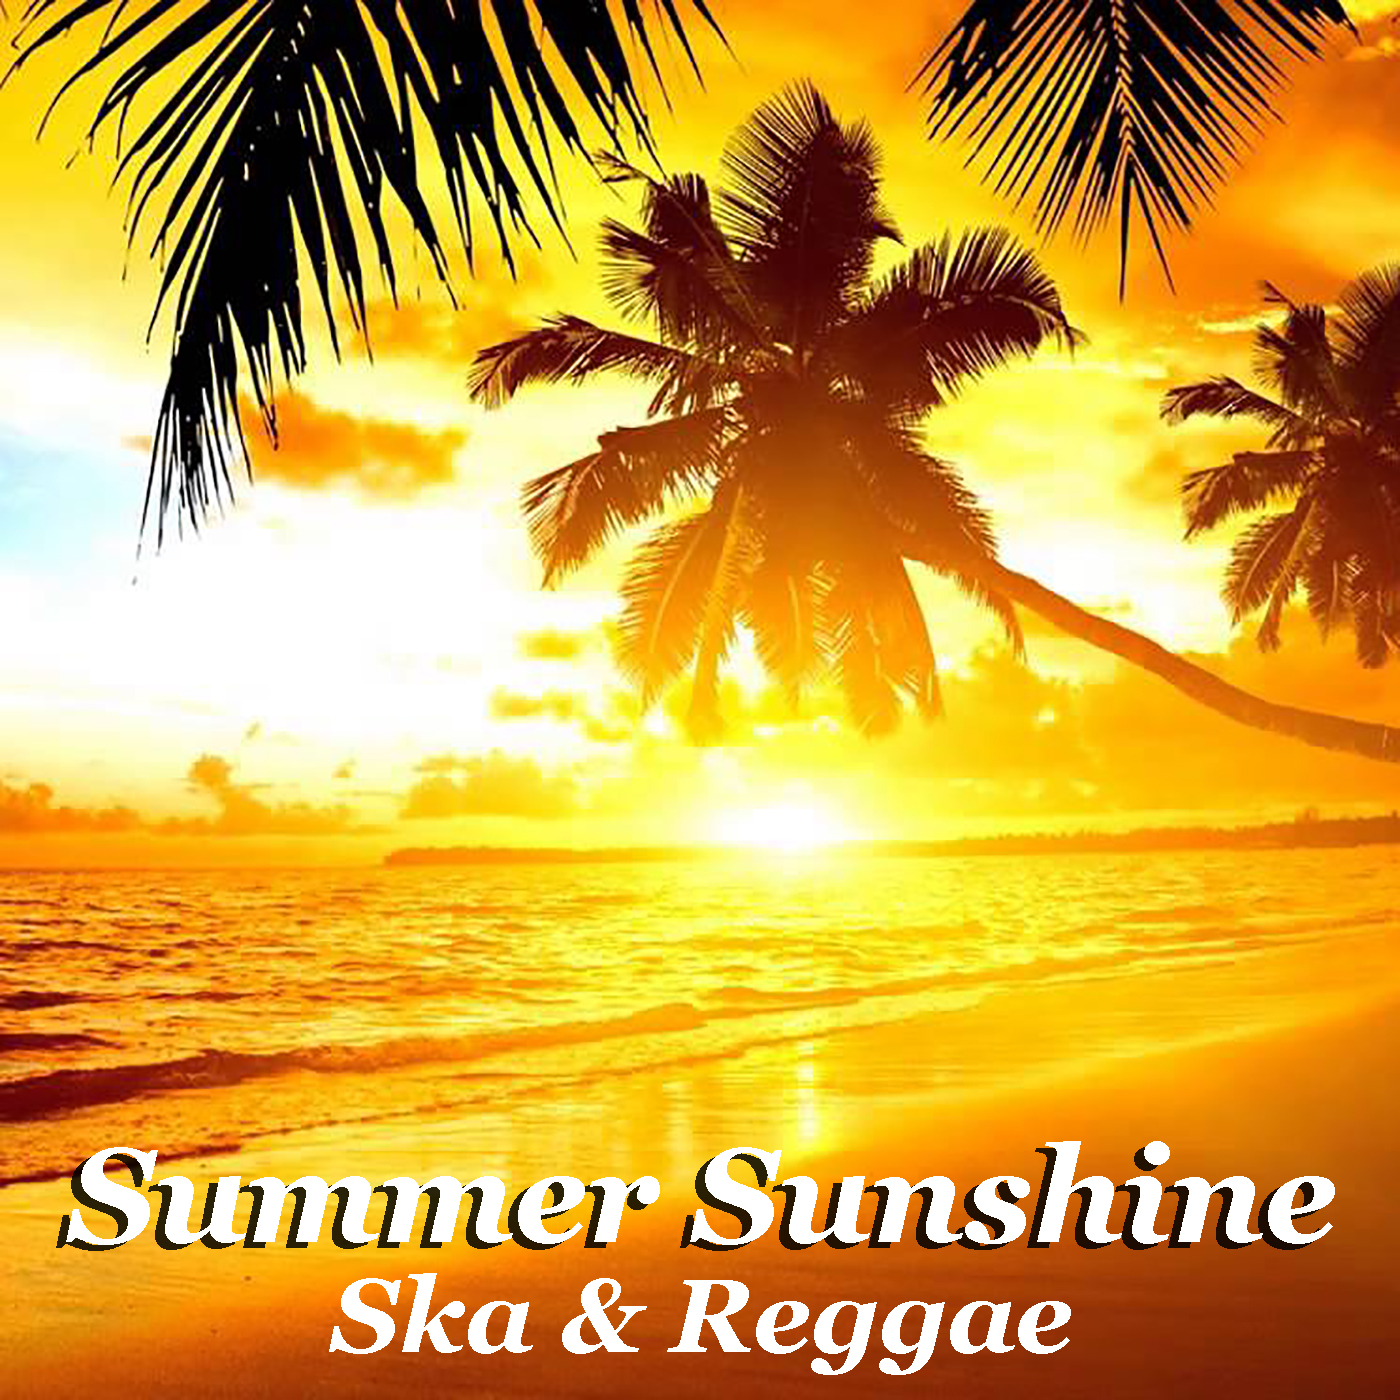 Summer Sunshine Ska & Reggae